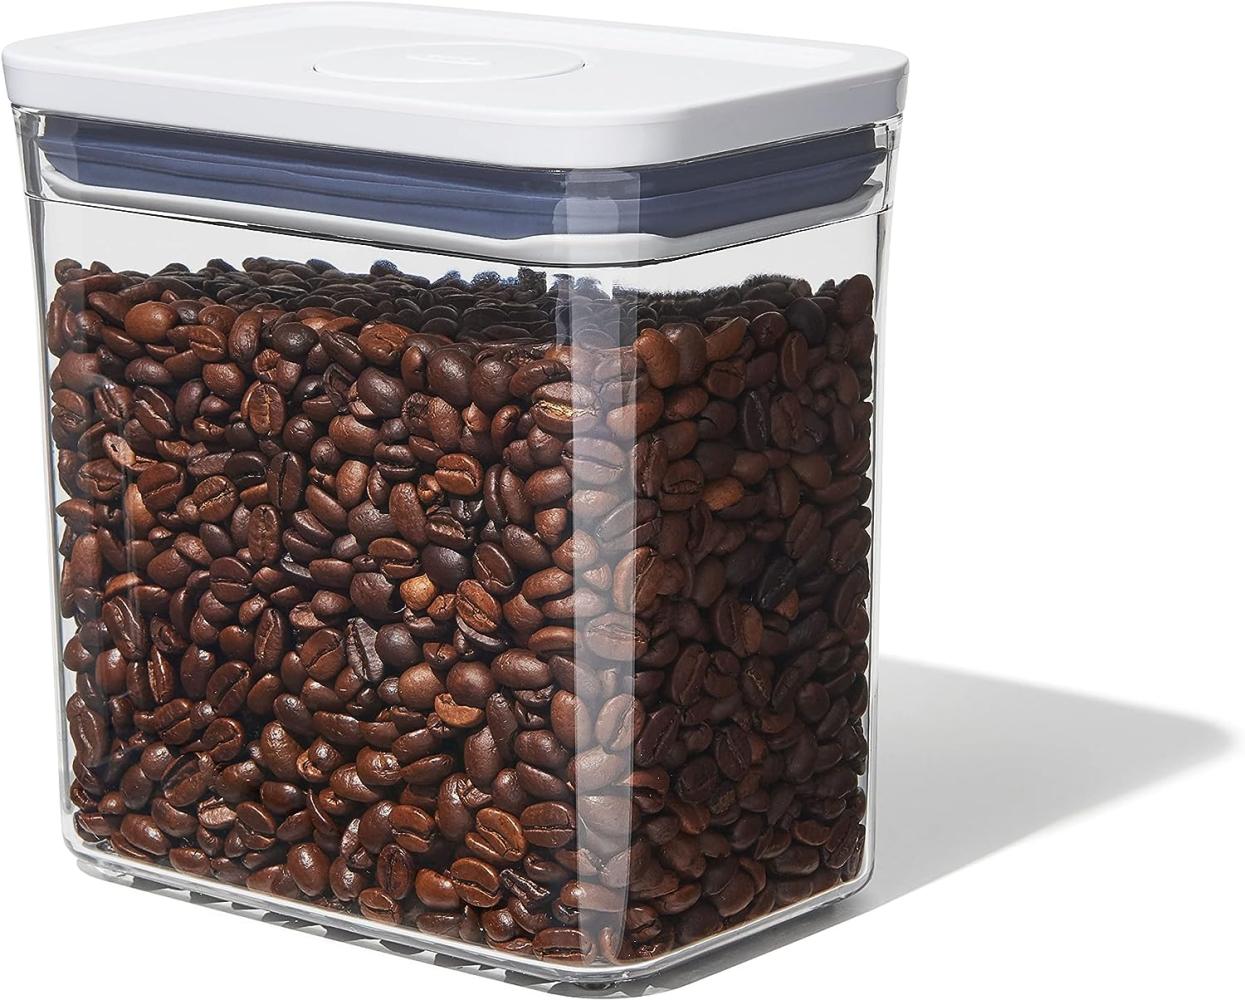 OXO Good Grips POP-Behälter – luftdichte, stapelbare Aufbewahrungsbox mit Deckel für Lebensmittel – 1,6 l für Kaffee und mehr Bild 1